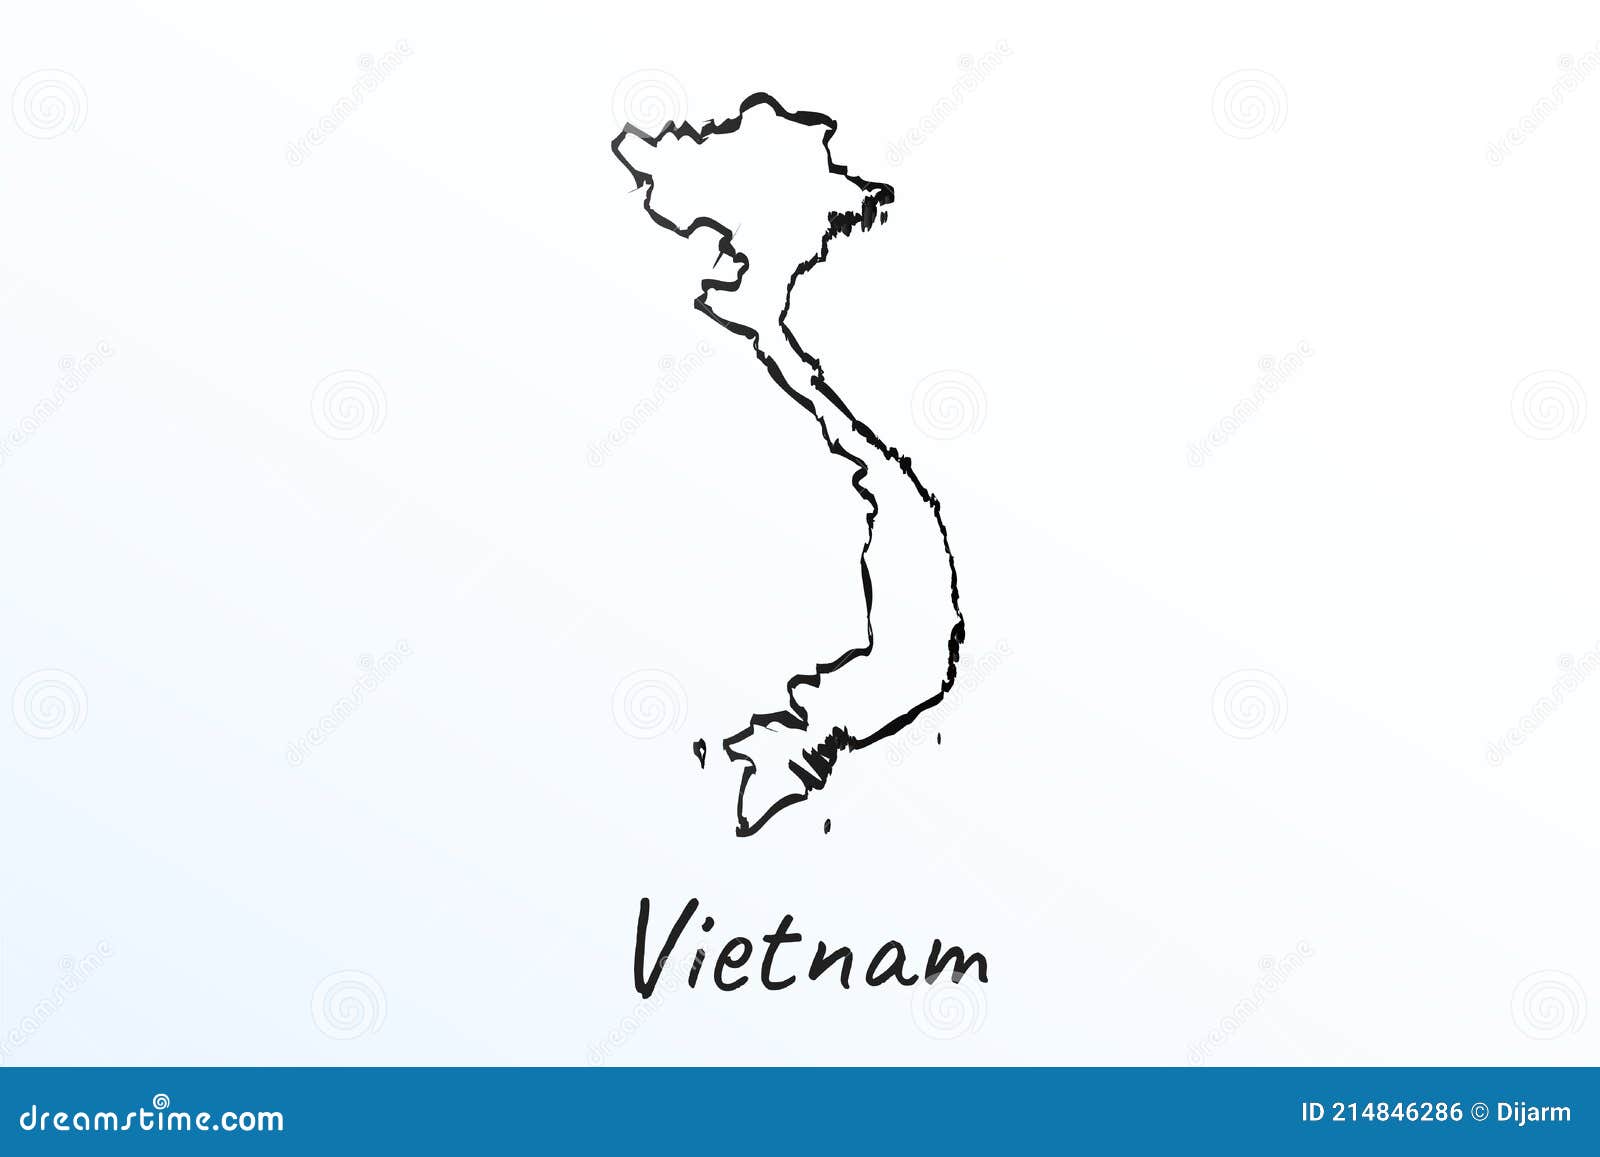 越南建筑文化插画欣赏[26P]